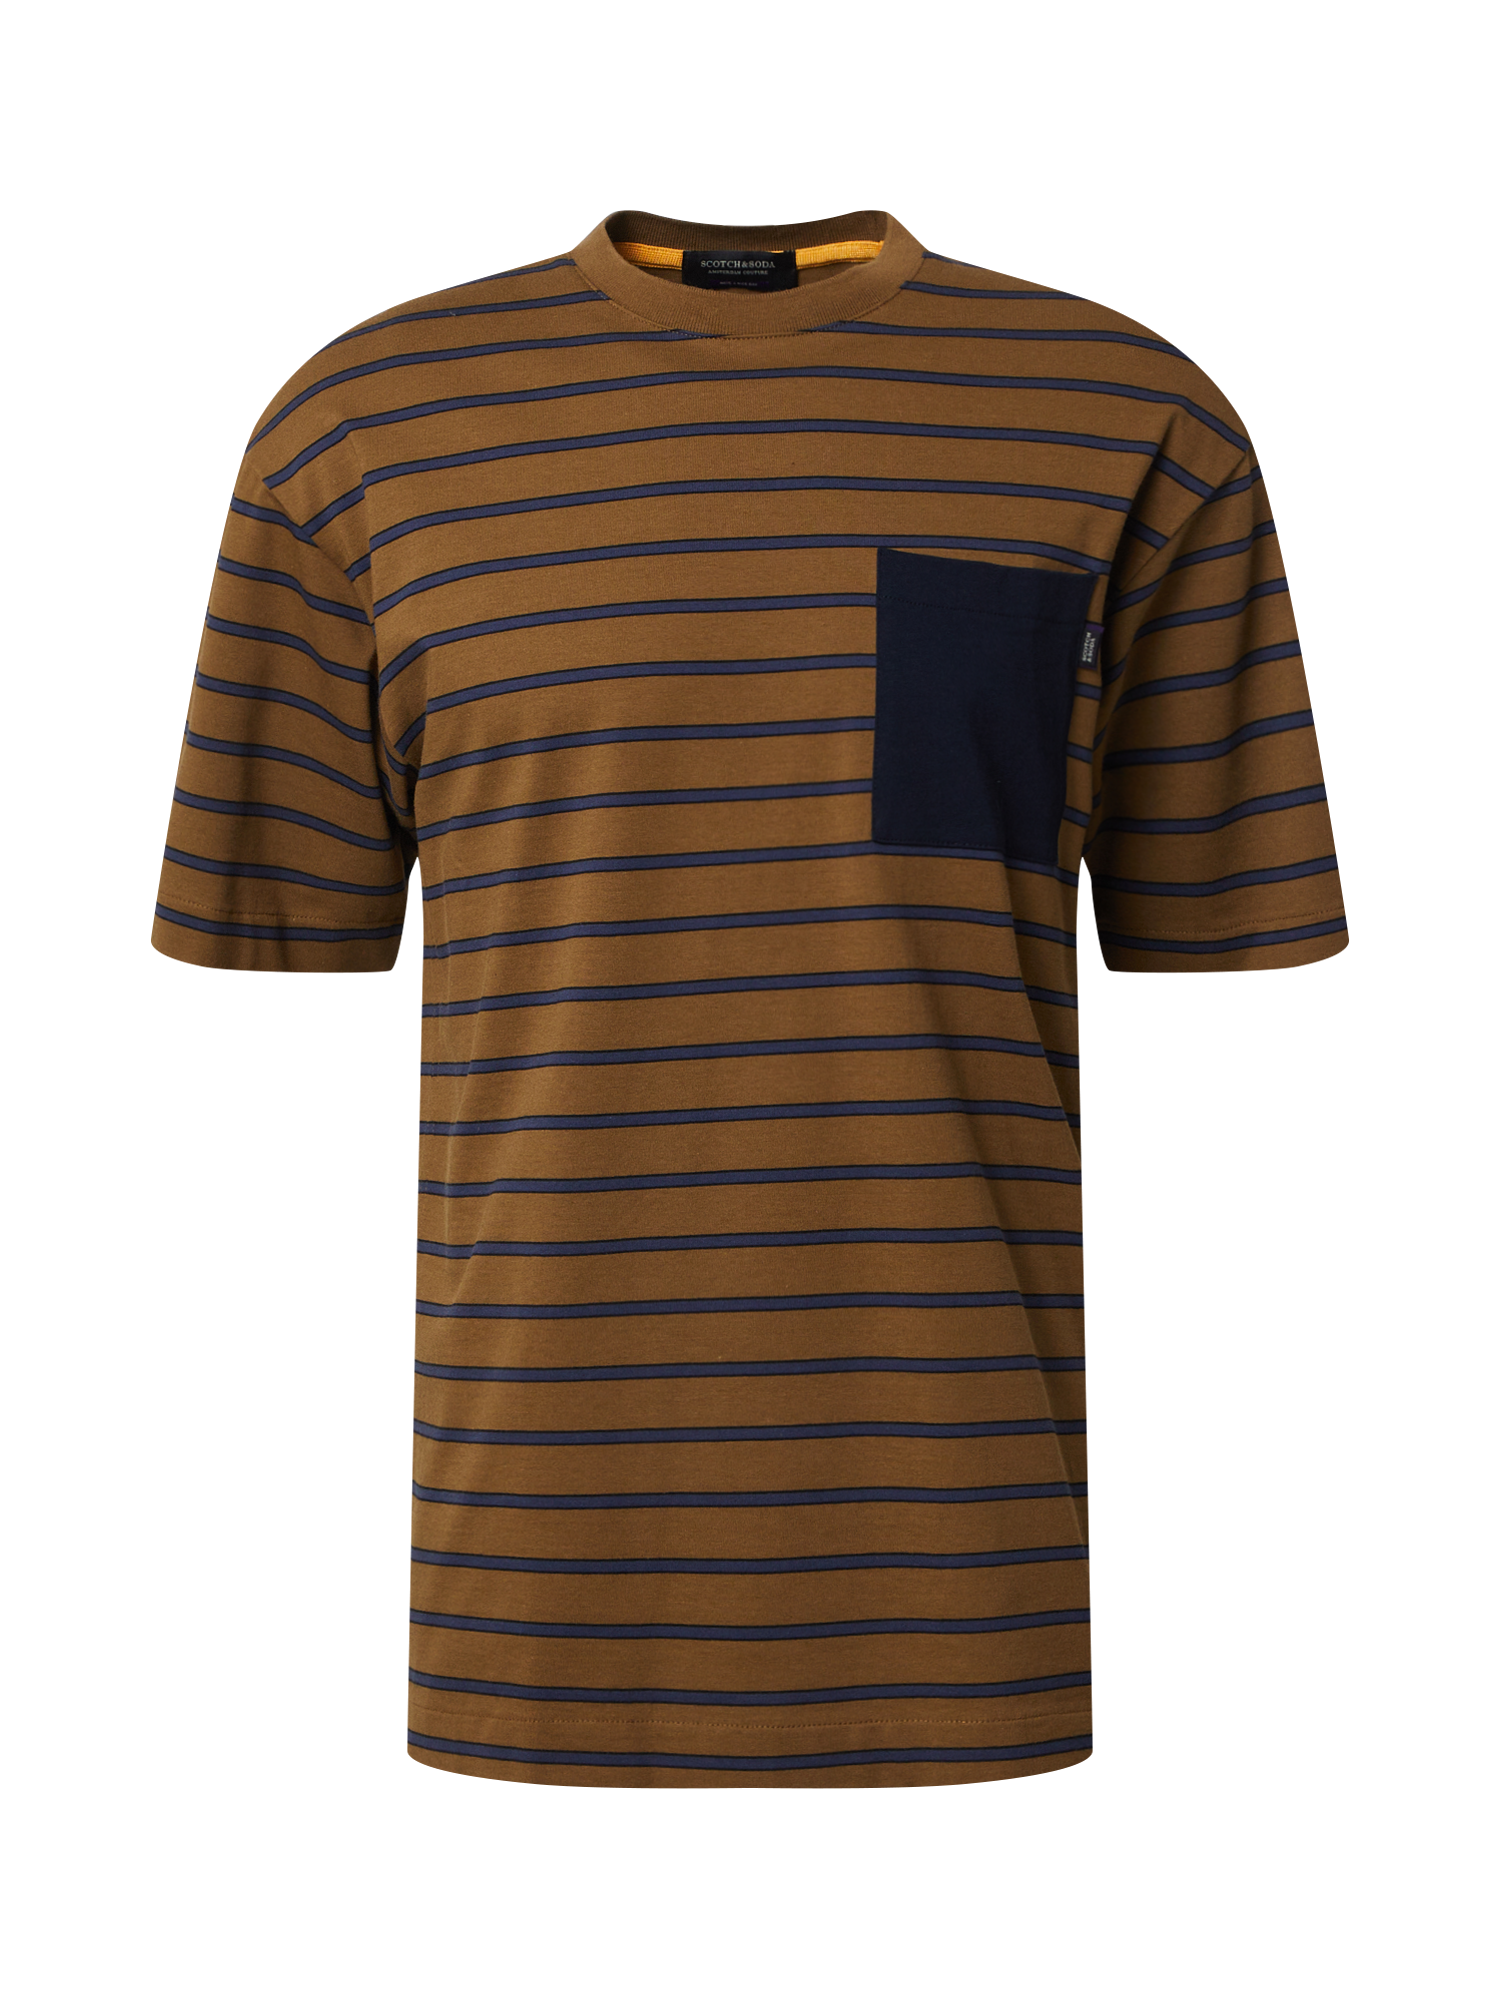 Koszulki Odzież SCOTCH & SODA Koszulka w kolorze Niebieski, Brązowym 